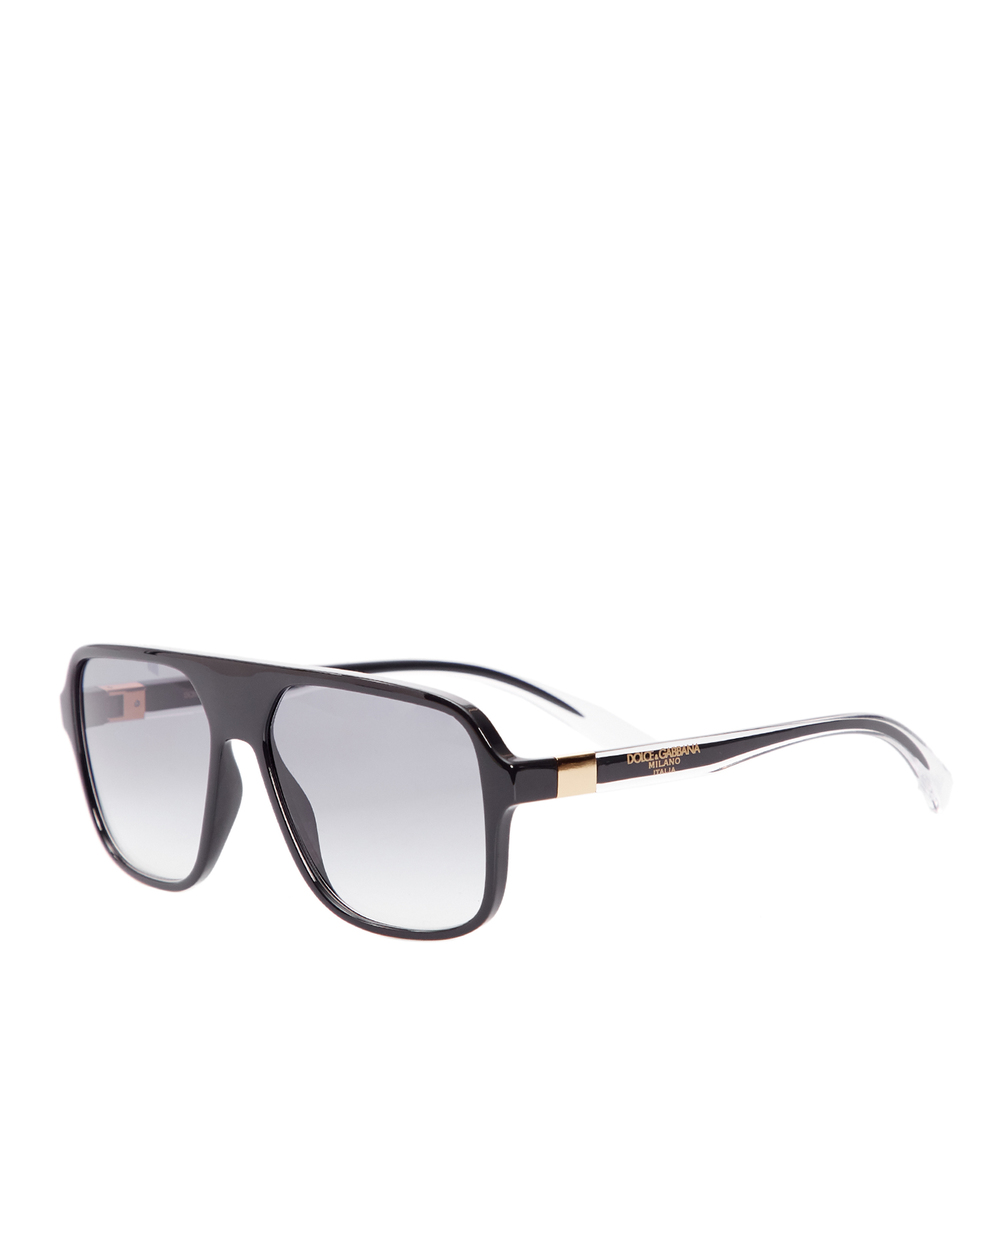 Солнцезащитные очки Dolce&Gabbana 6134675/7957, черный цвет • Купить в интернет-магазине Kameron